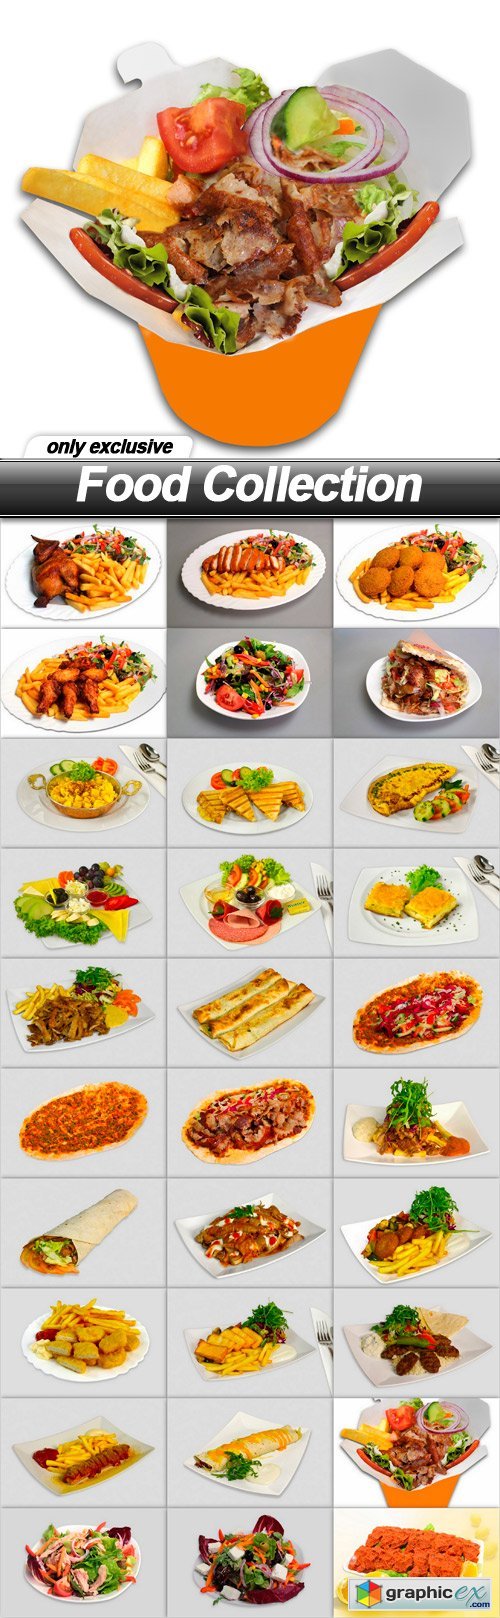 Food Collection - 30 UHQ JPEG